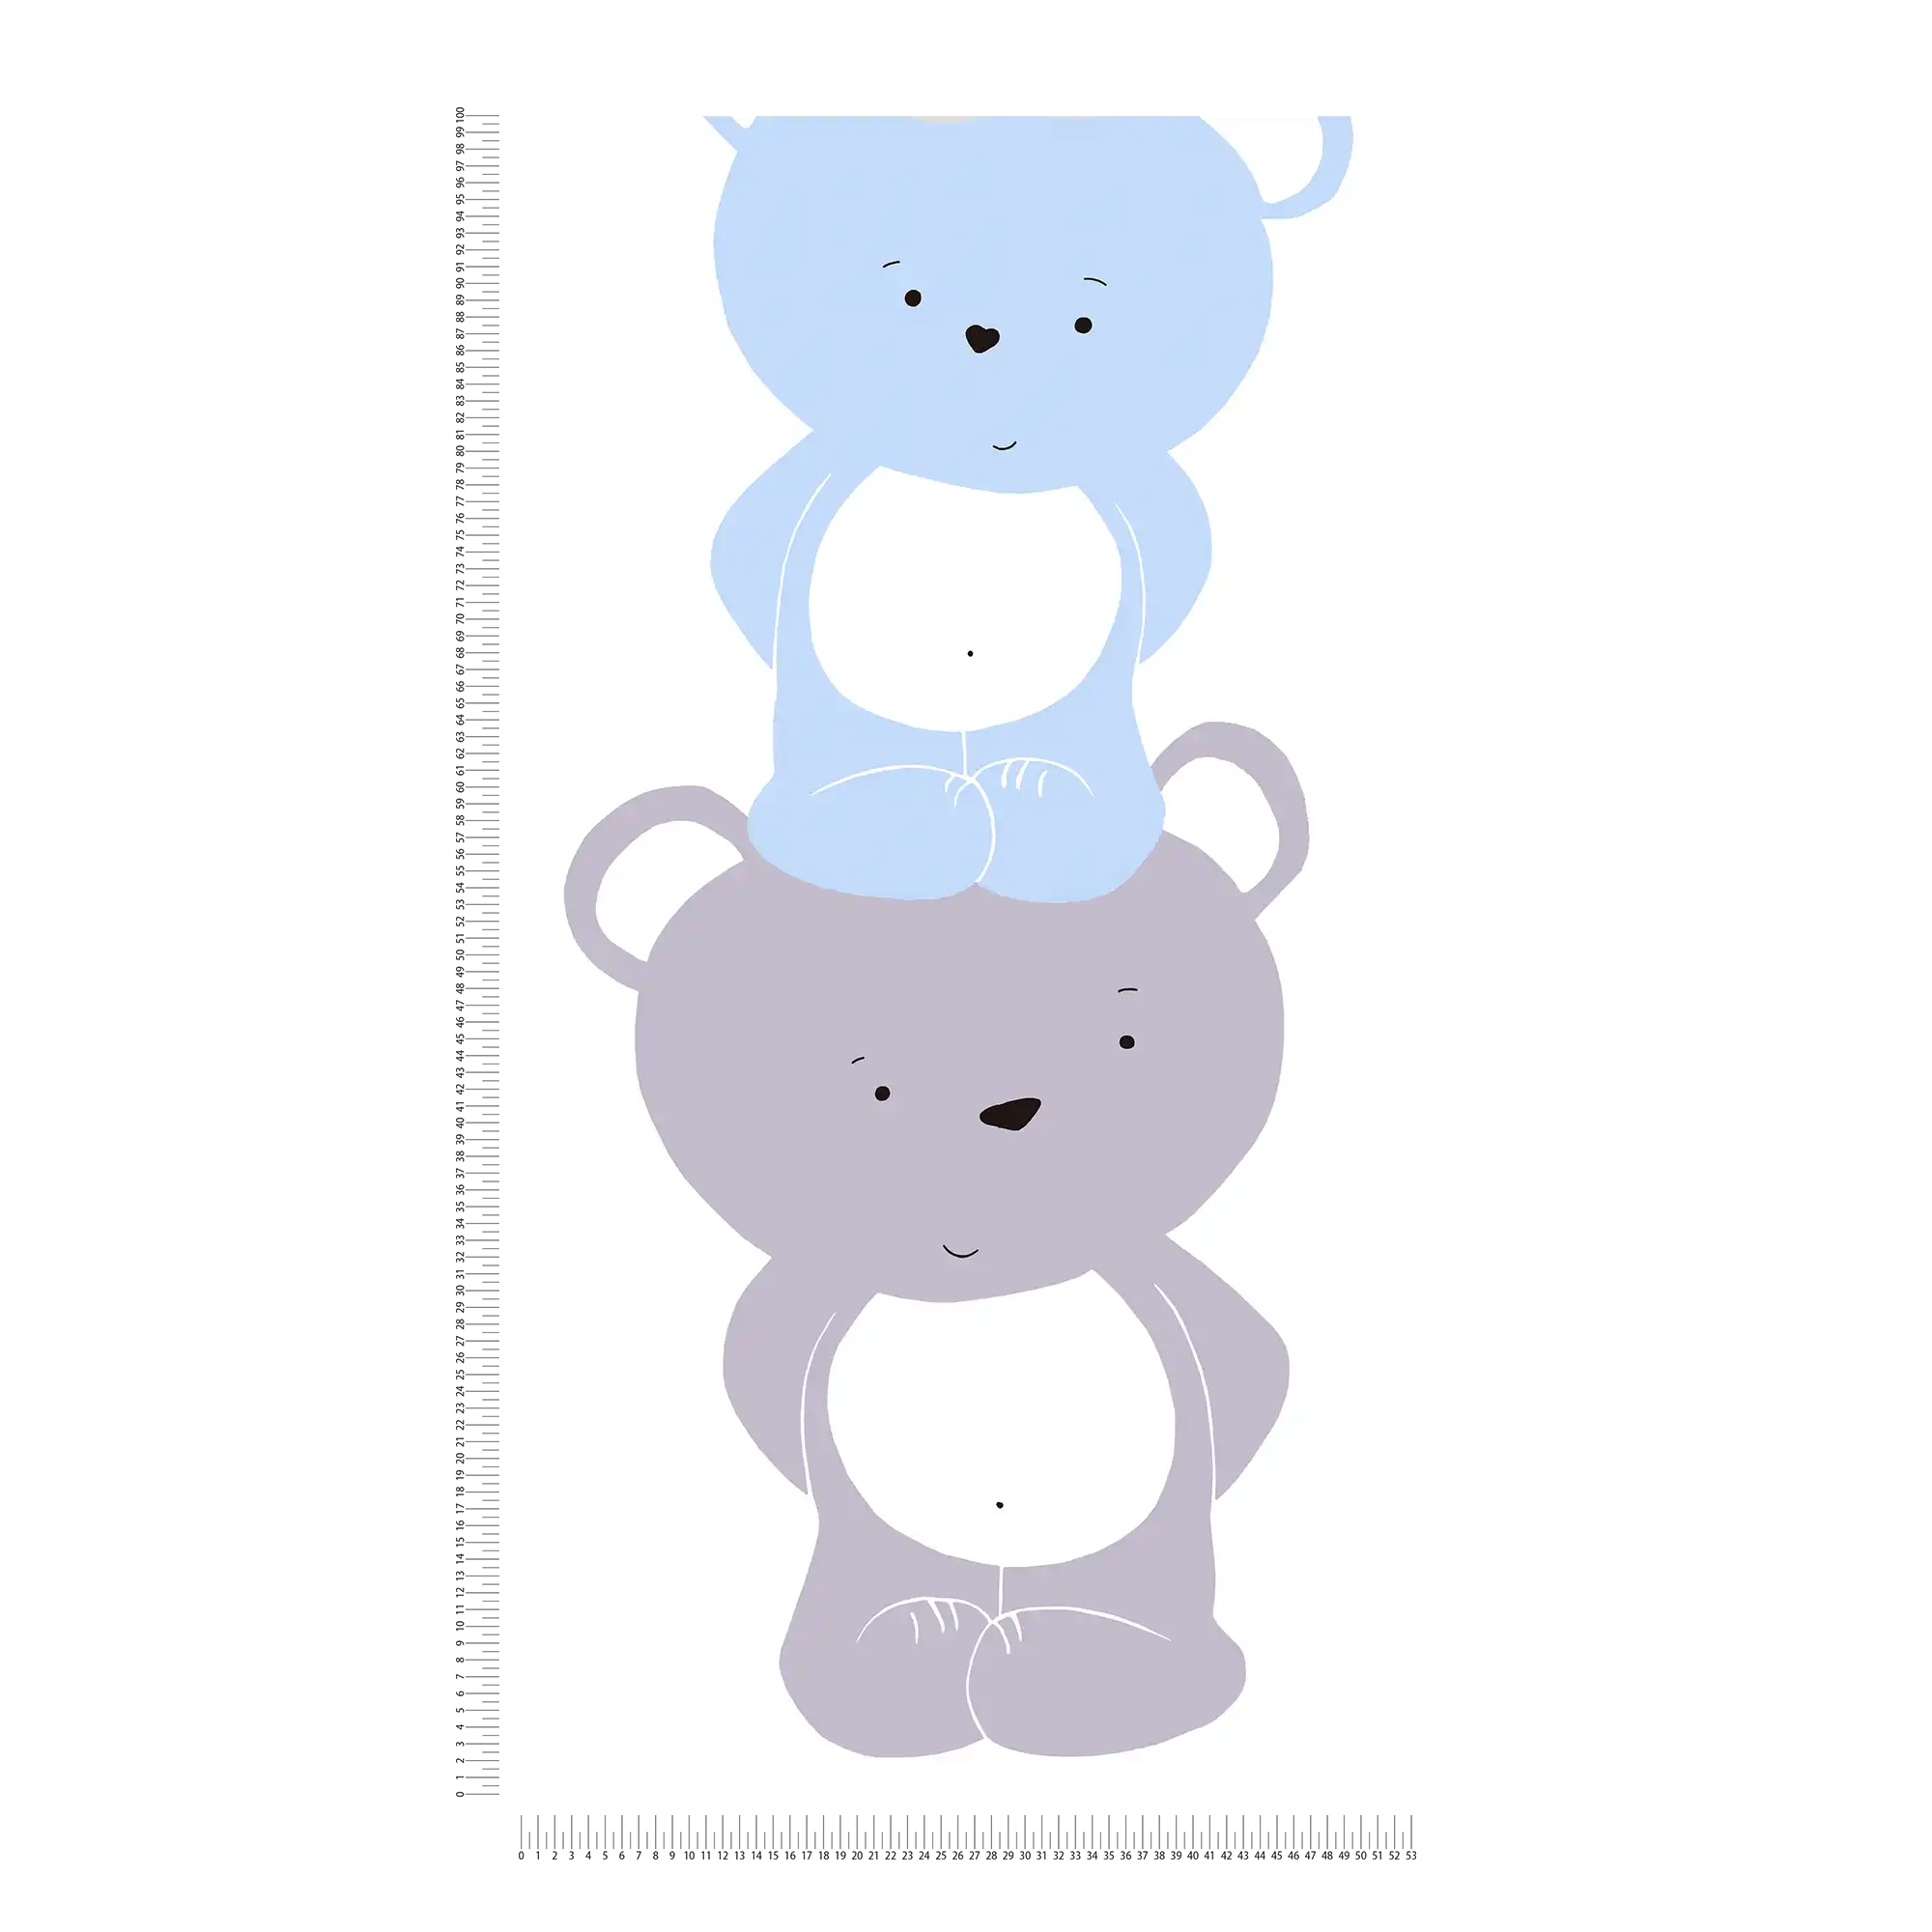             Jungenzimmer Tapete Bären Muster – Blau, Grau , Weiß
        